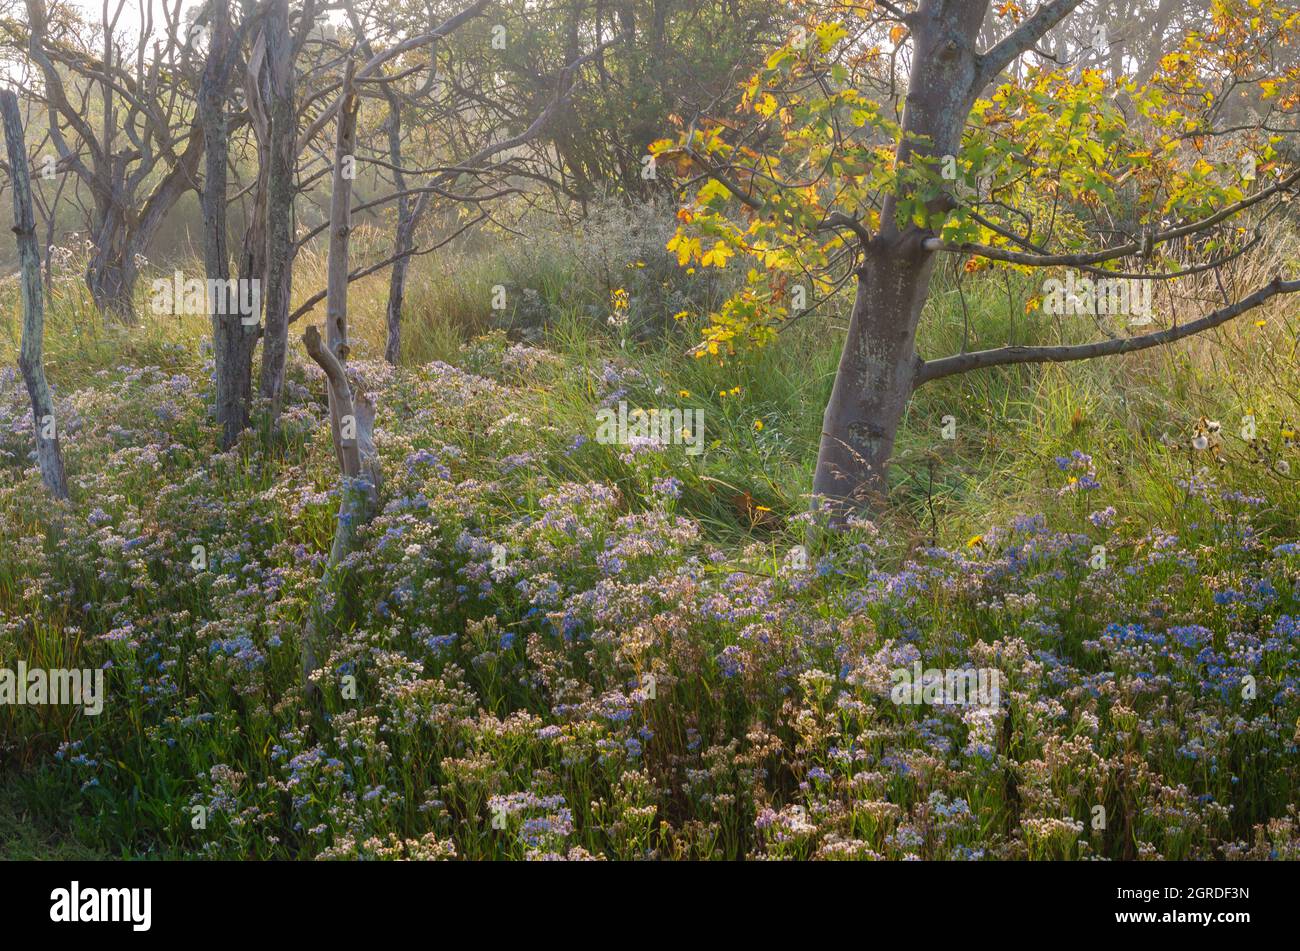 Autumn trees with Michaelmas daisies Stock Photo